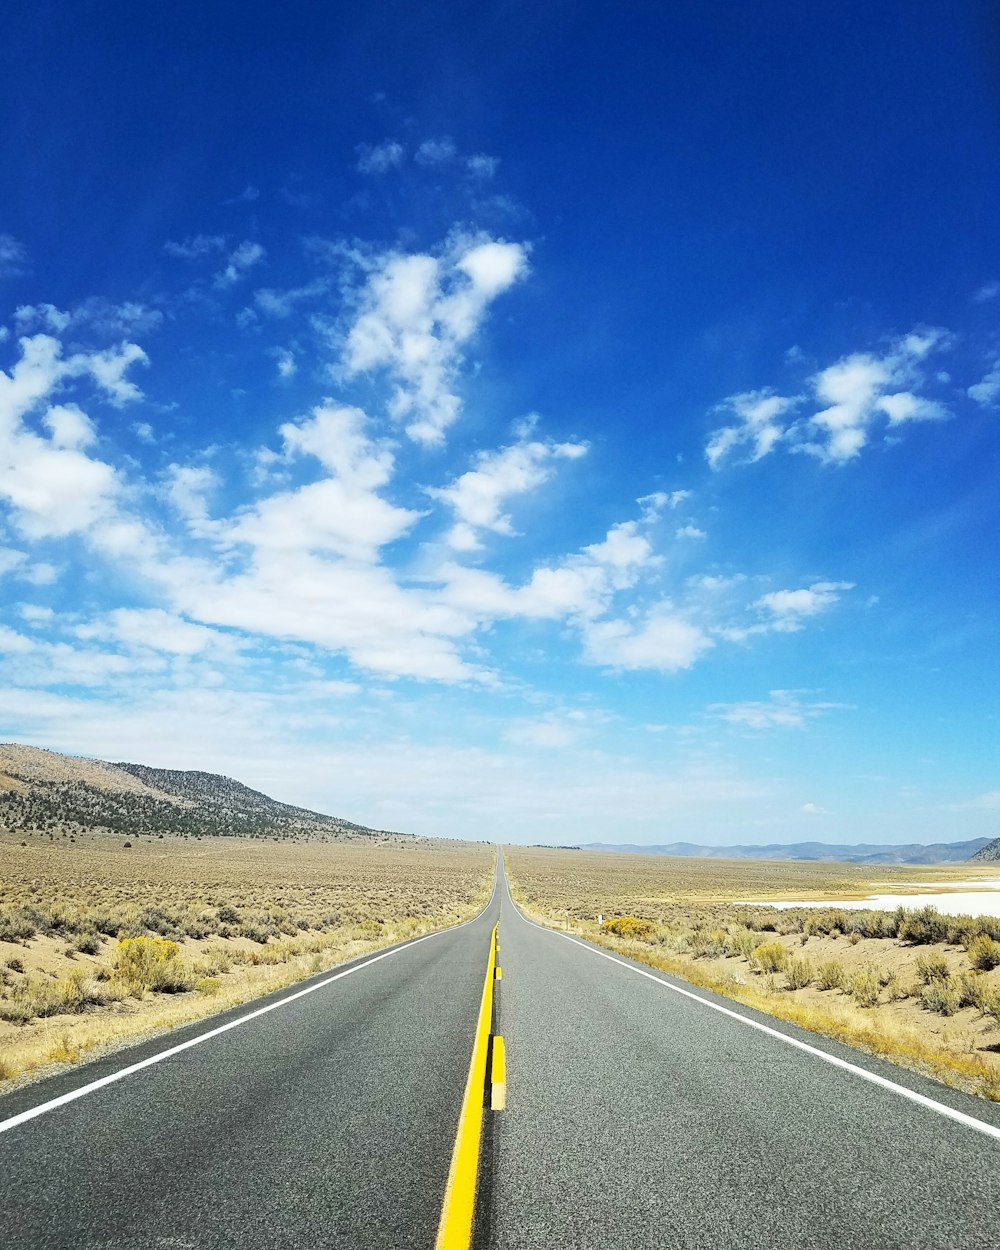 gray asphalt road under blue sky during daytime